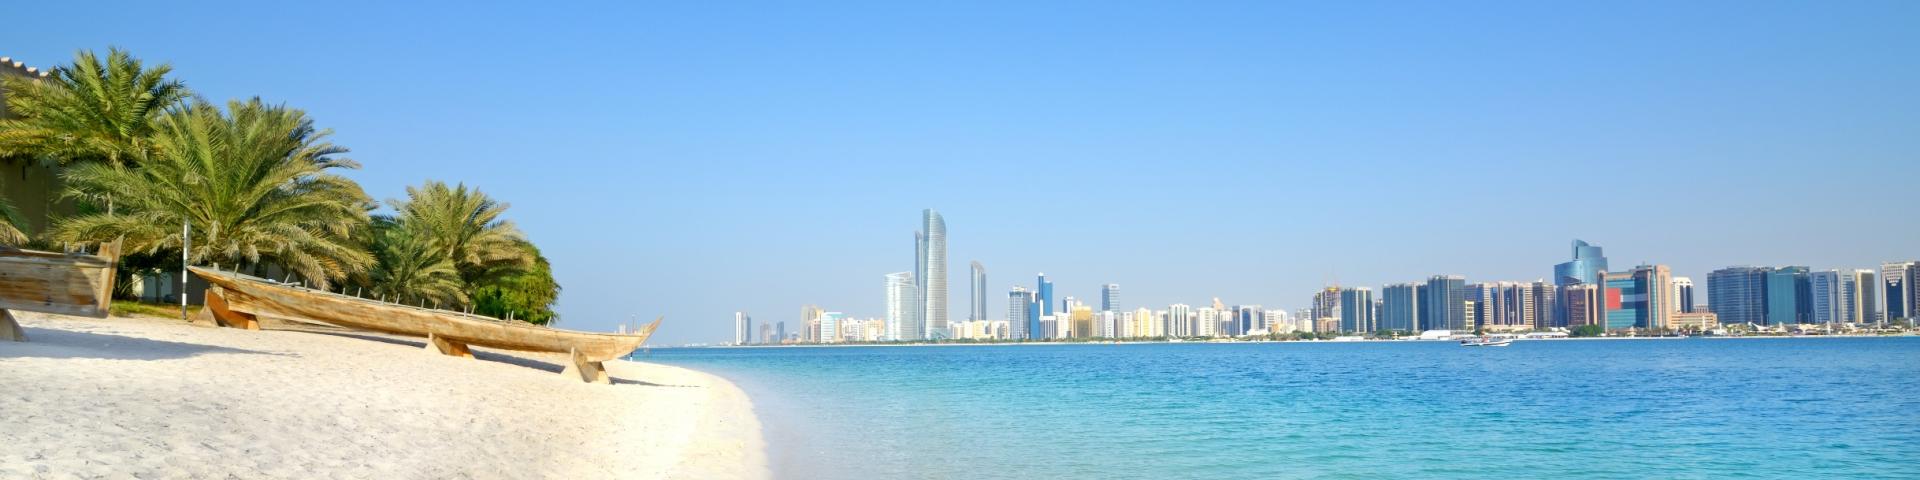 Niezwykła Japonia i plaże Abu Dhabi